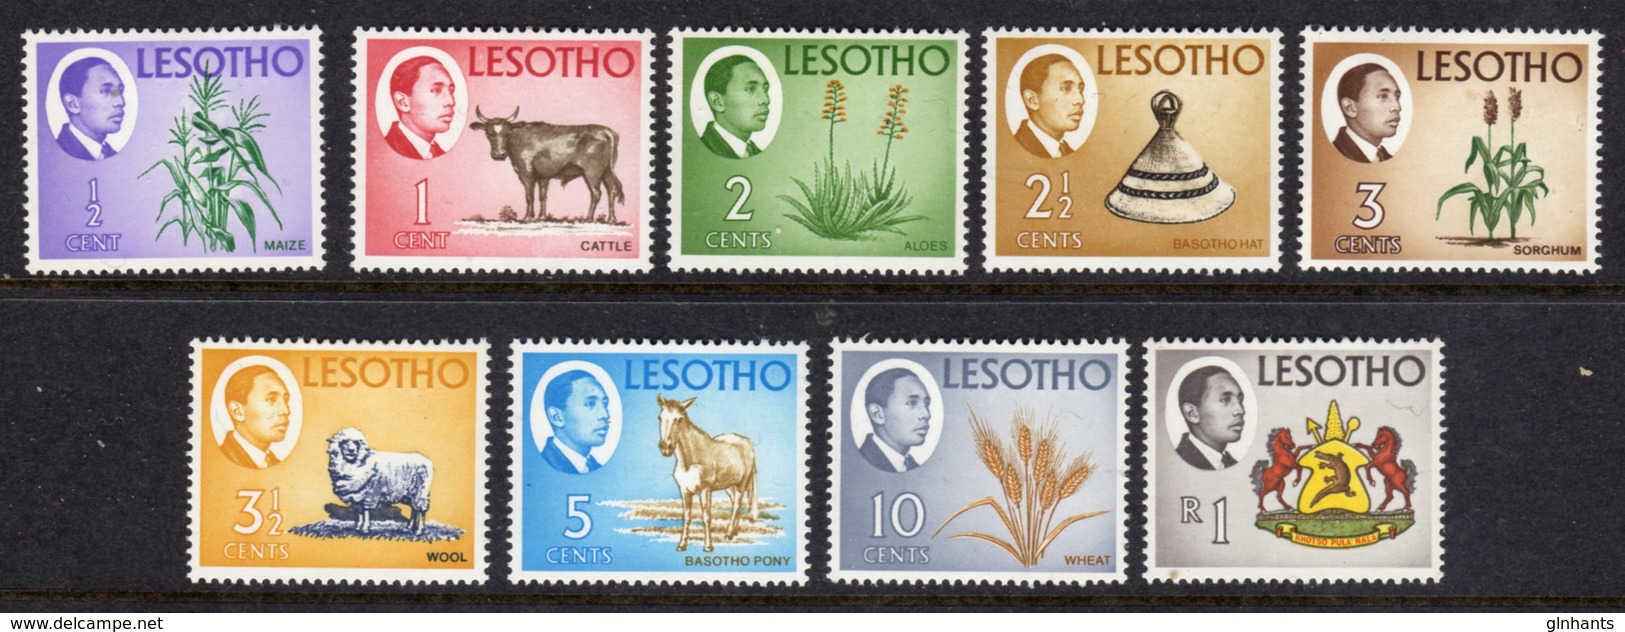 LESOTHO  - 1968 DEFINITIVE SET (9V) FINE MOUNTED MINT MM * SG 147-154, 158 - Lesotho (1966-...)